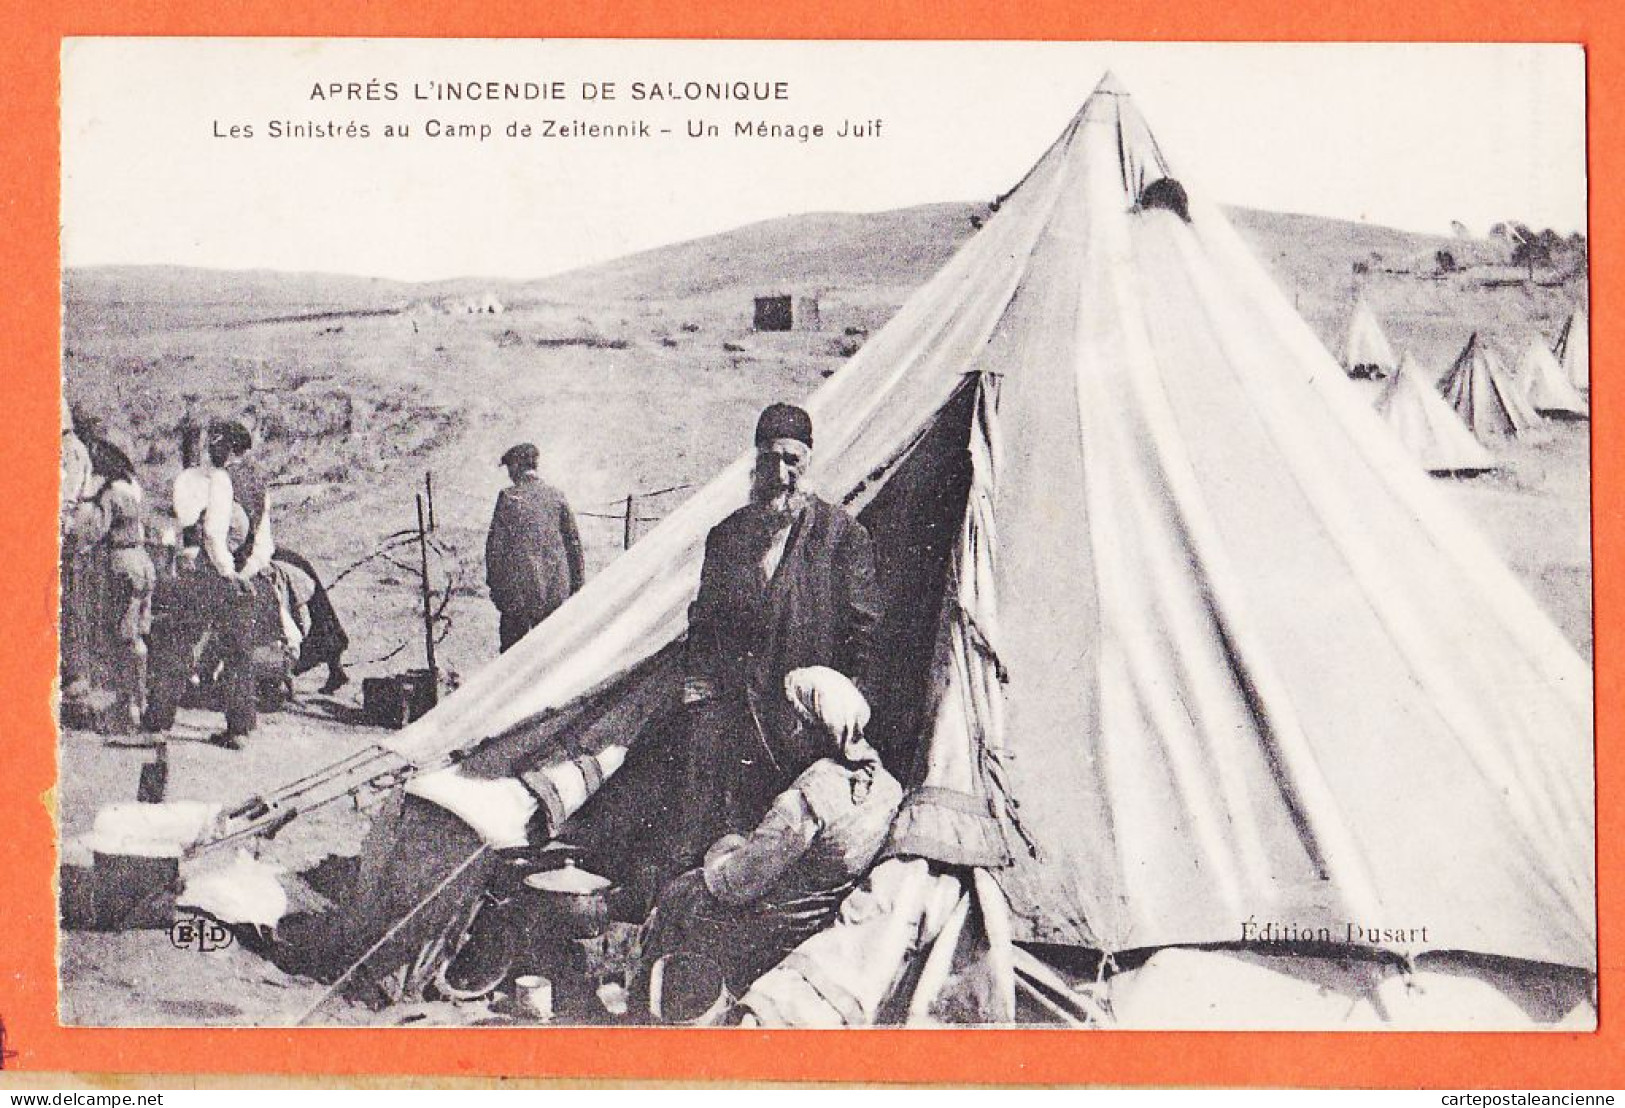 06441 / Camp ZEITENNIK Après Incendie SALONIQUE Θεσσαλονίκη Menage Juif Sinistrés 1918 LE DELEY ELD DUSSART - Grèce